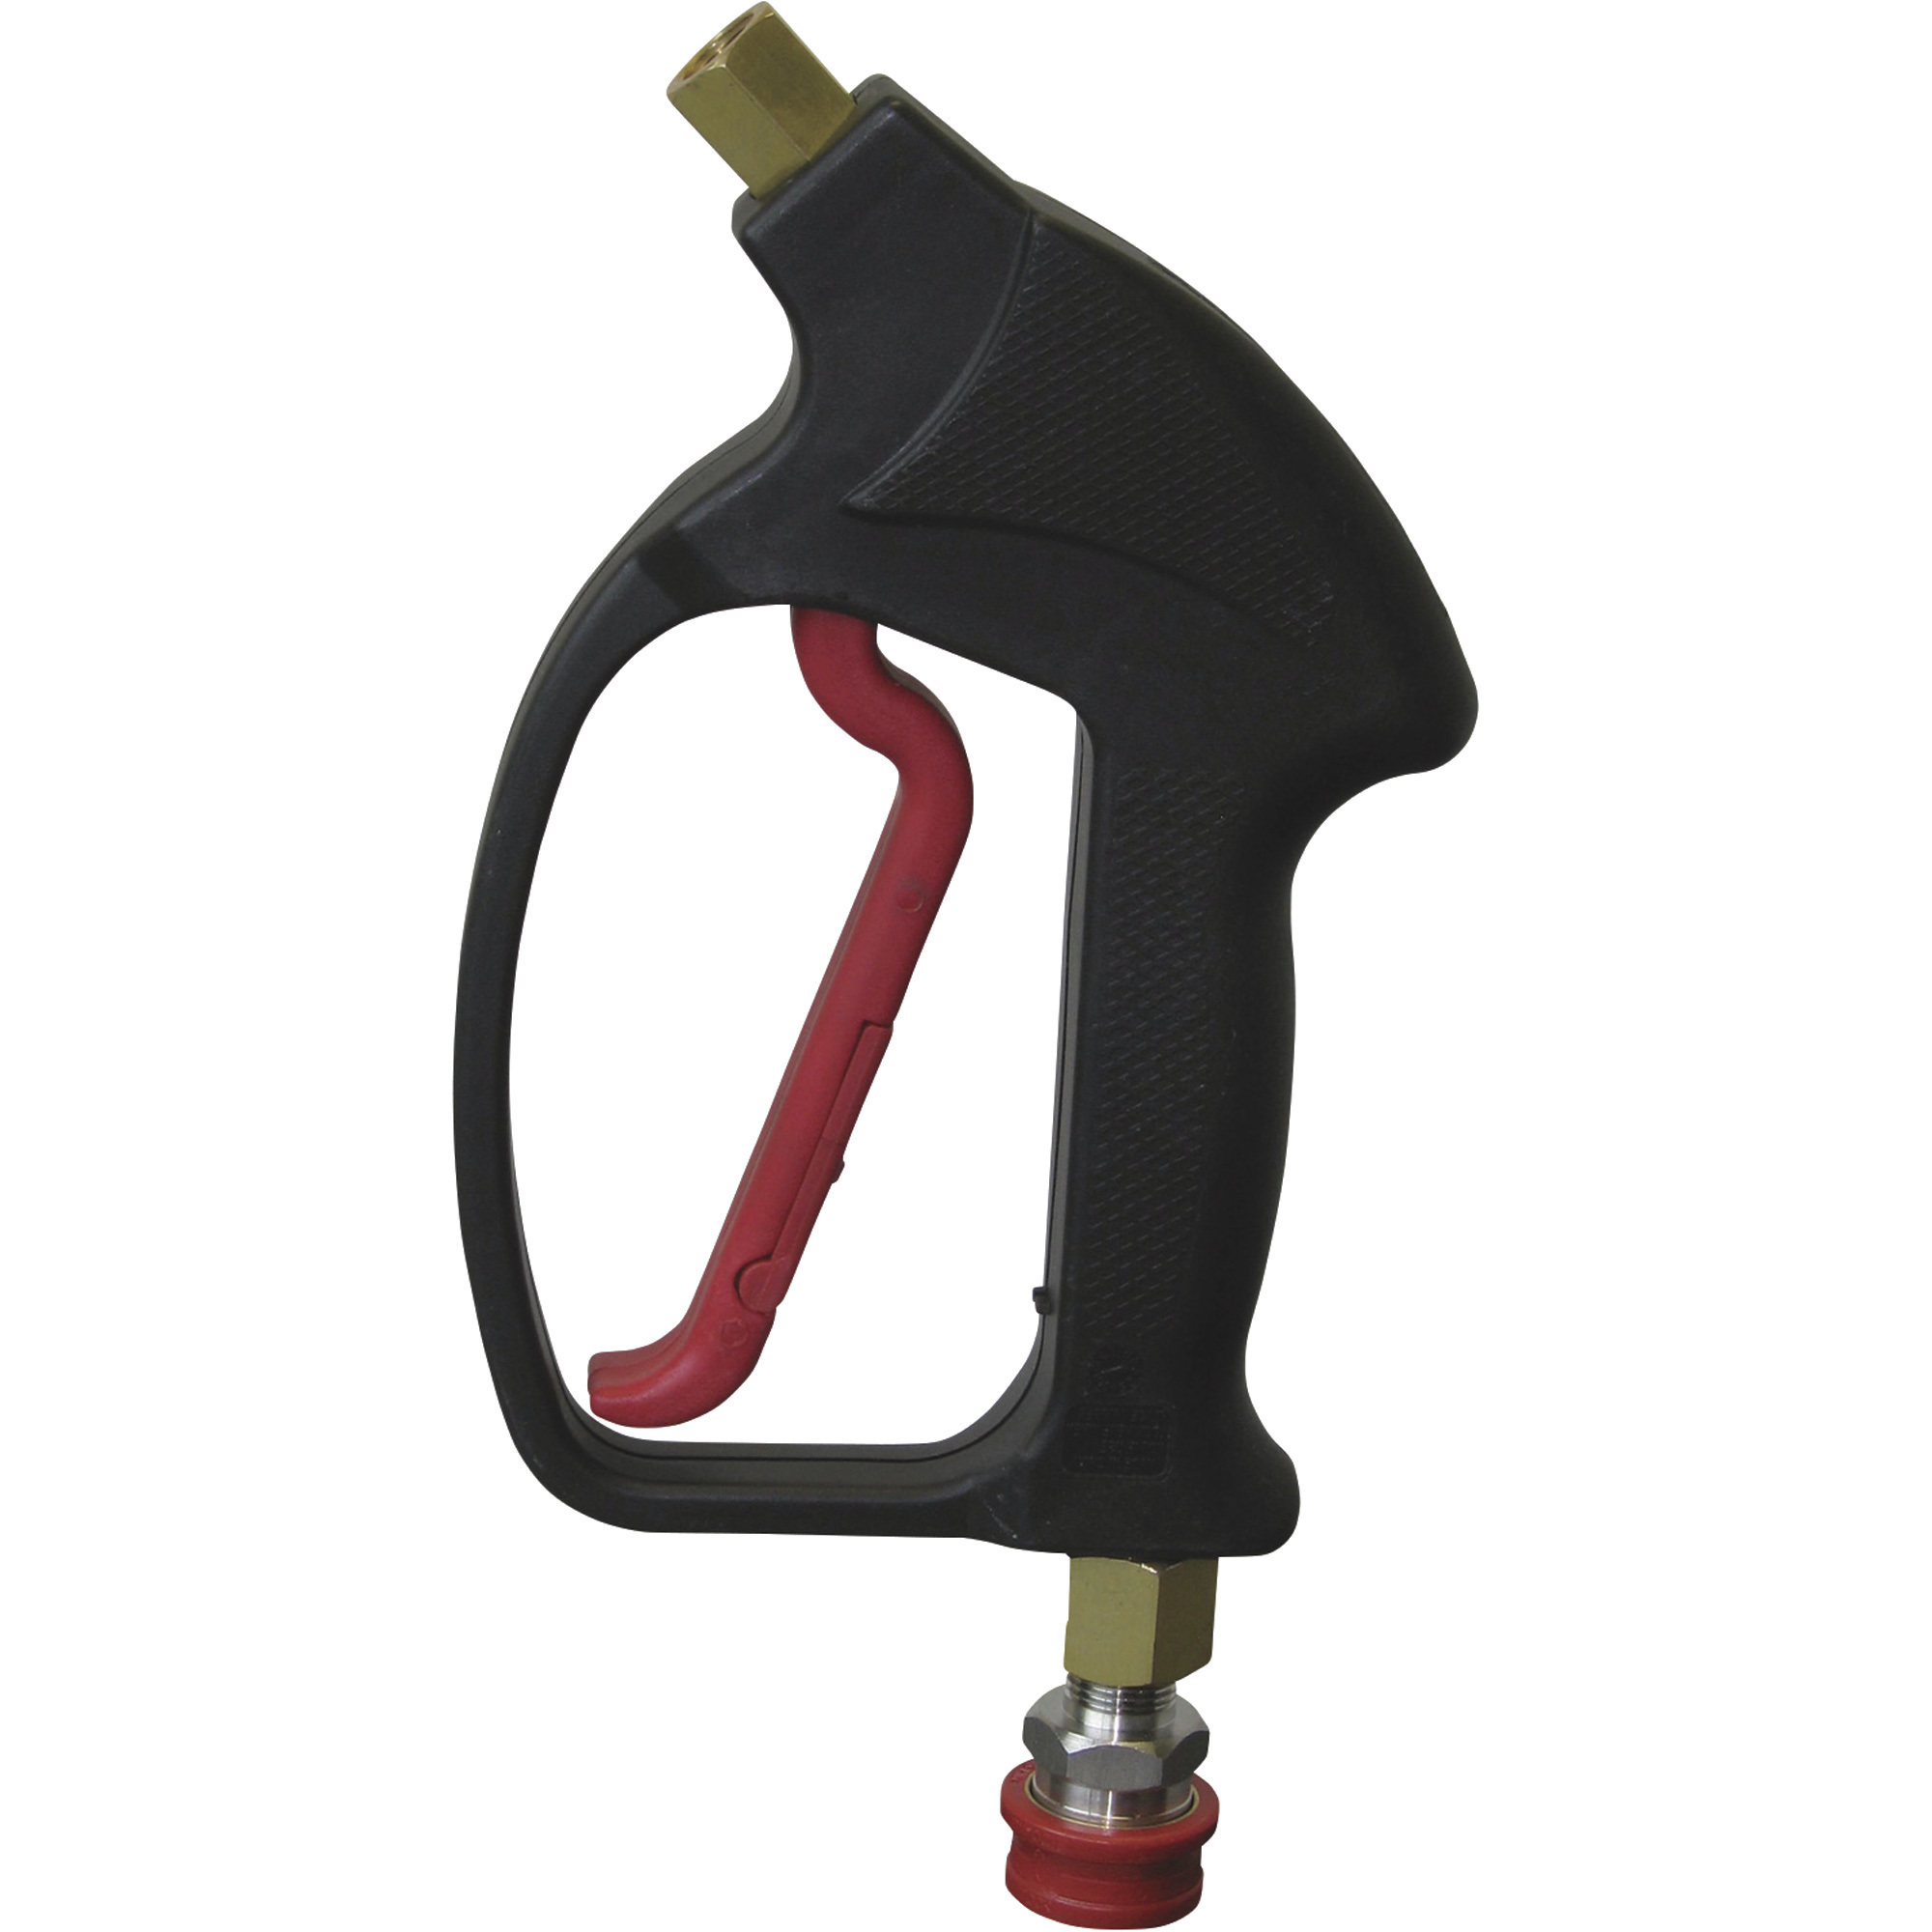 NorthStar Hot Water Pressure Washer Trigger Spray Gun â 4000 PSI, 8 GPM, Model DGR4000P